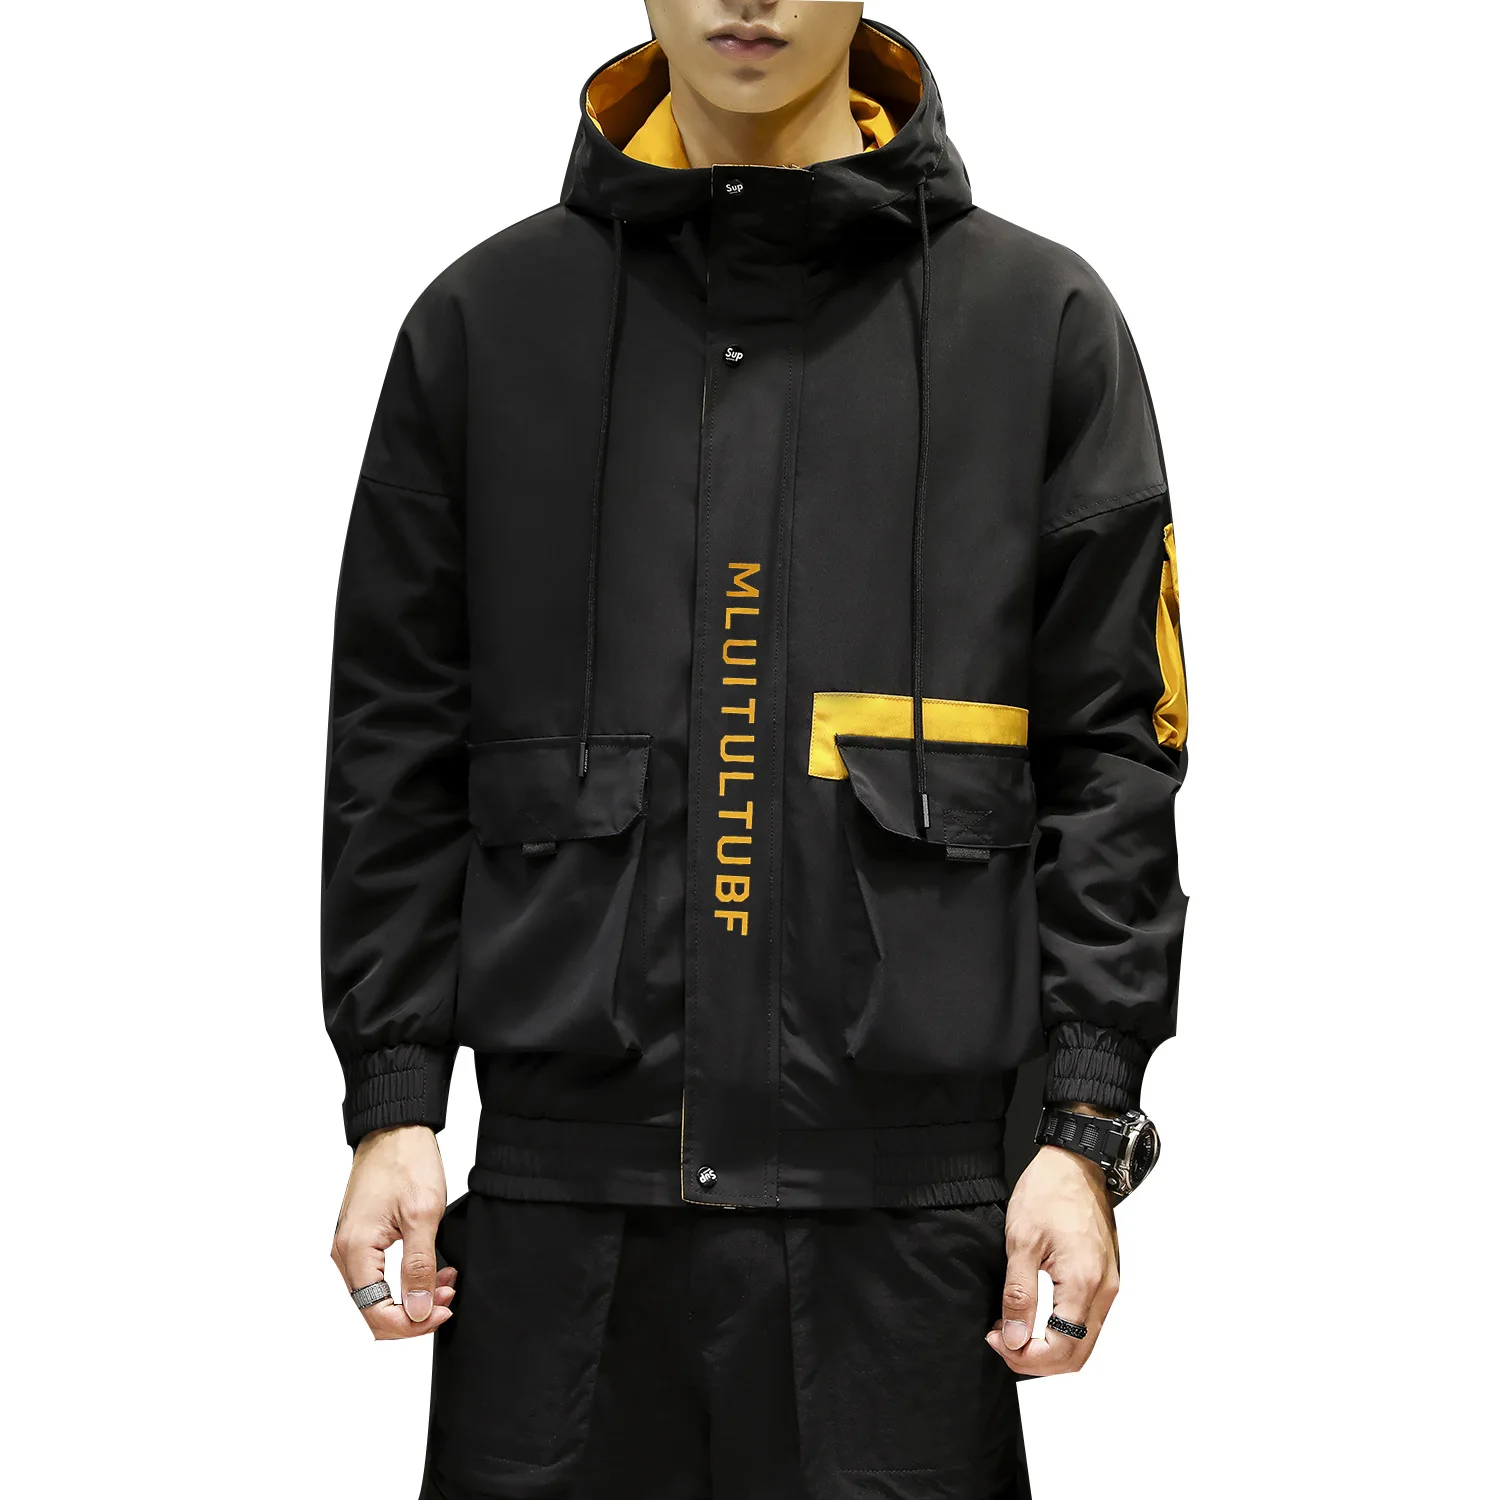 ICPANS весна осень японский Harajuku мужские куртки с капюшоном Повседневная ветровка верхняя одежда уличная Лоскутная Мода